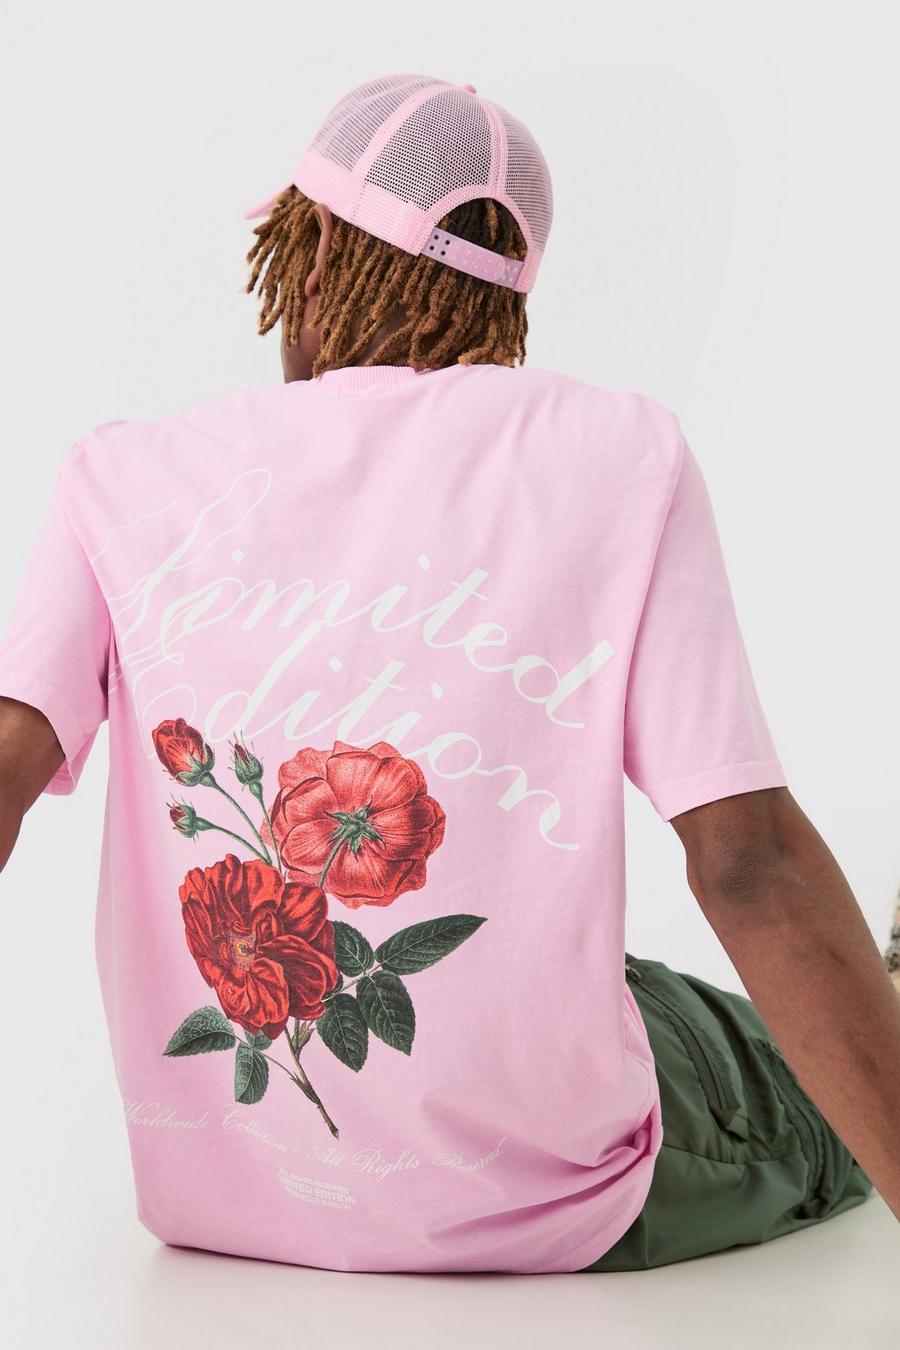 Camiseta Tall con estampado gráfico rosa de flores Lmtd Edition, Pink